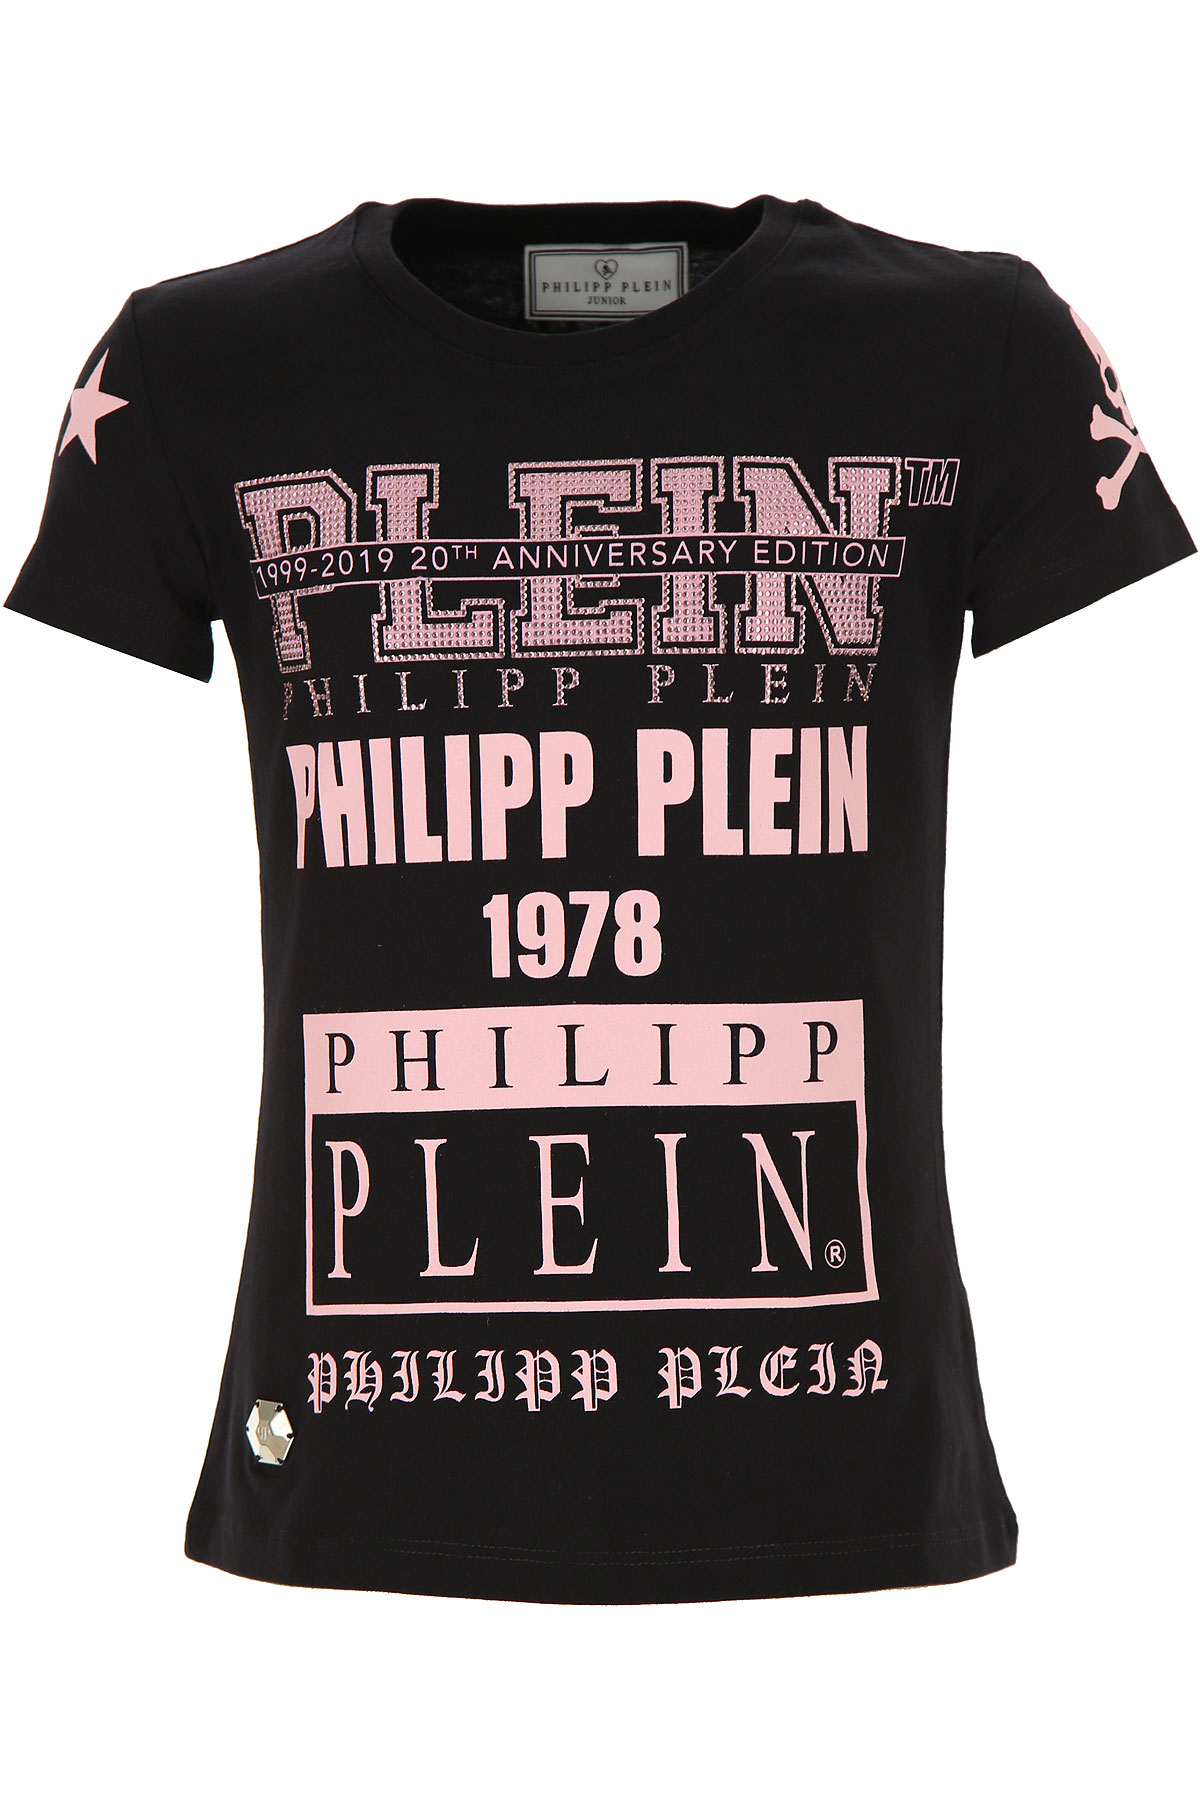 Philipp Plein Kinder T-Shirt für Mädchen Günstig im Sale, Schwarz, Baumwolle, 2017, 12Y 14Y 8Y